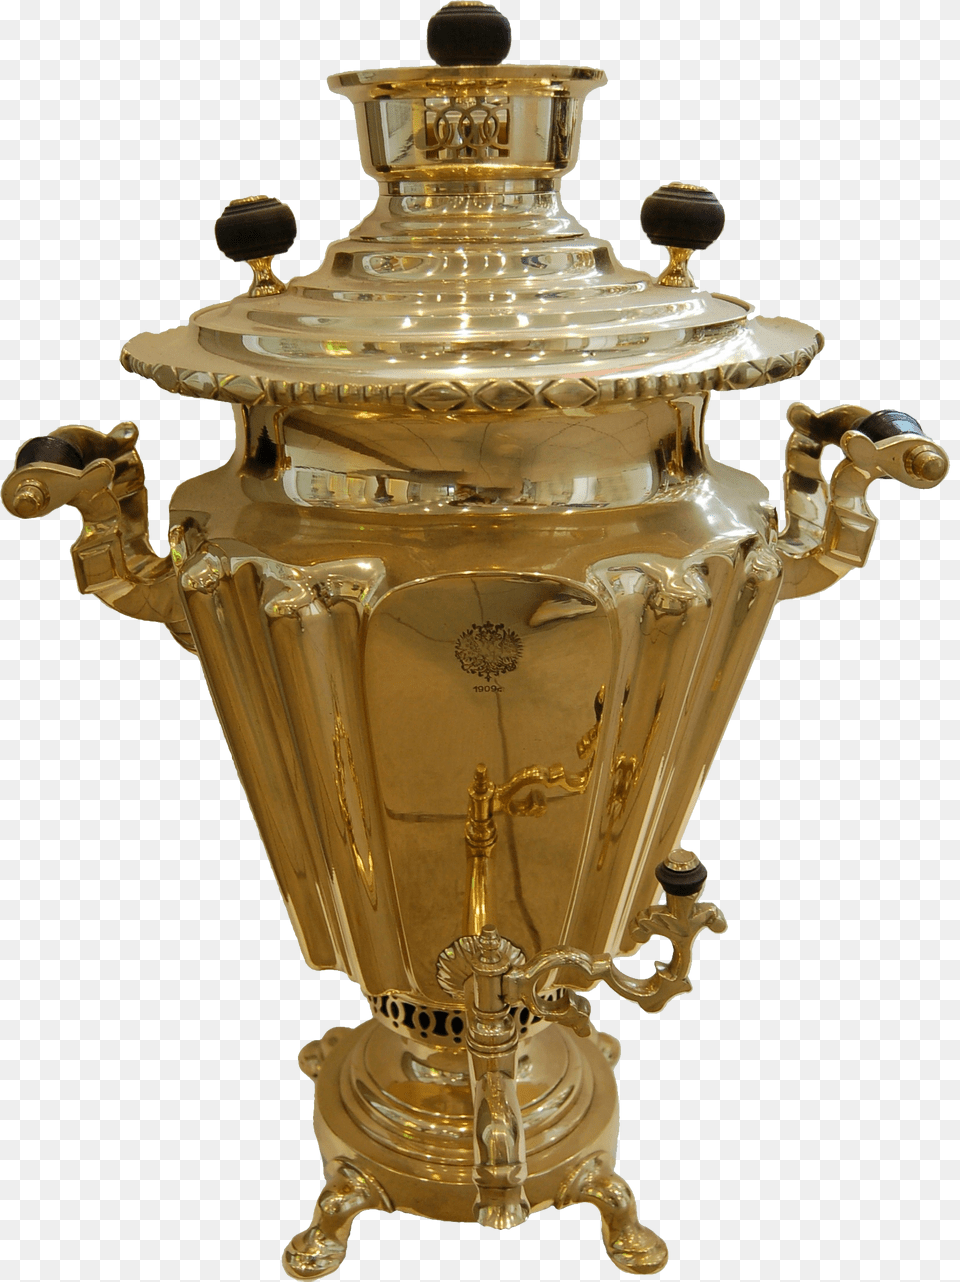 Samovar Brass, Jar, Pottery, Urn, Chandelier Free Transparent Png